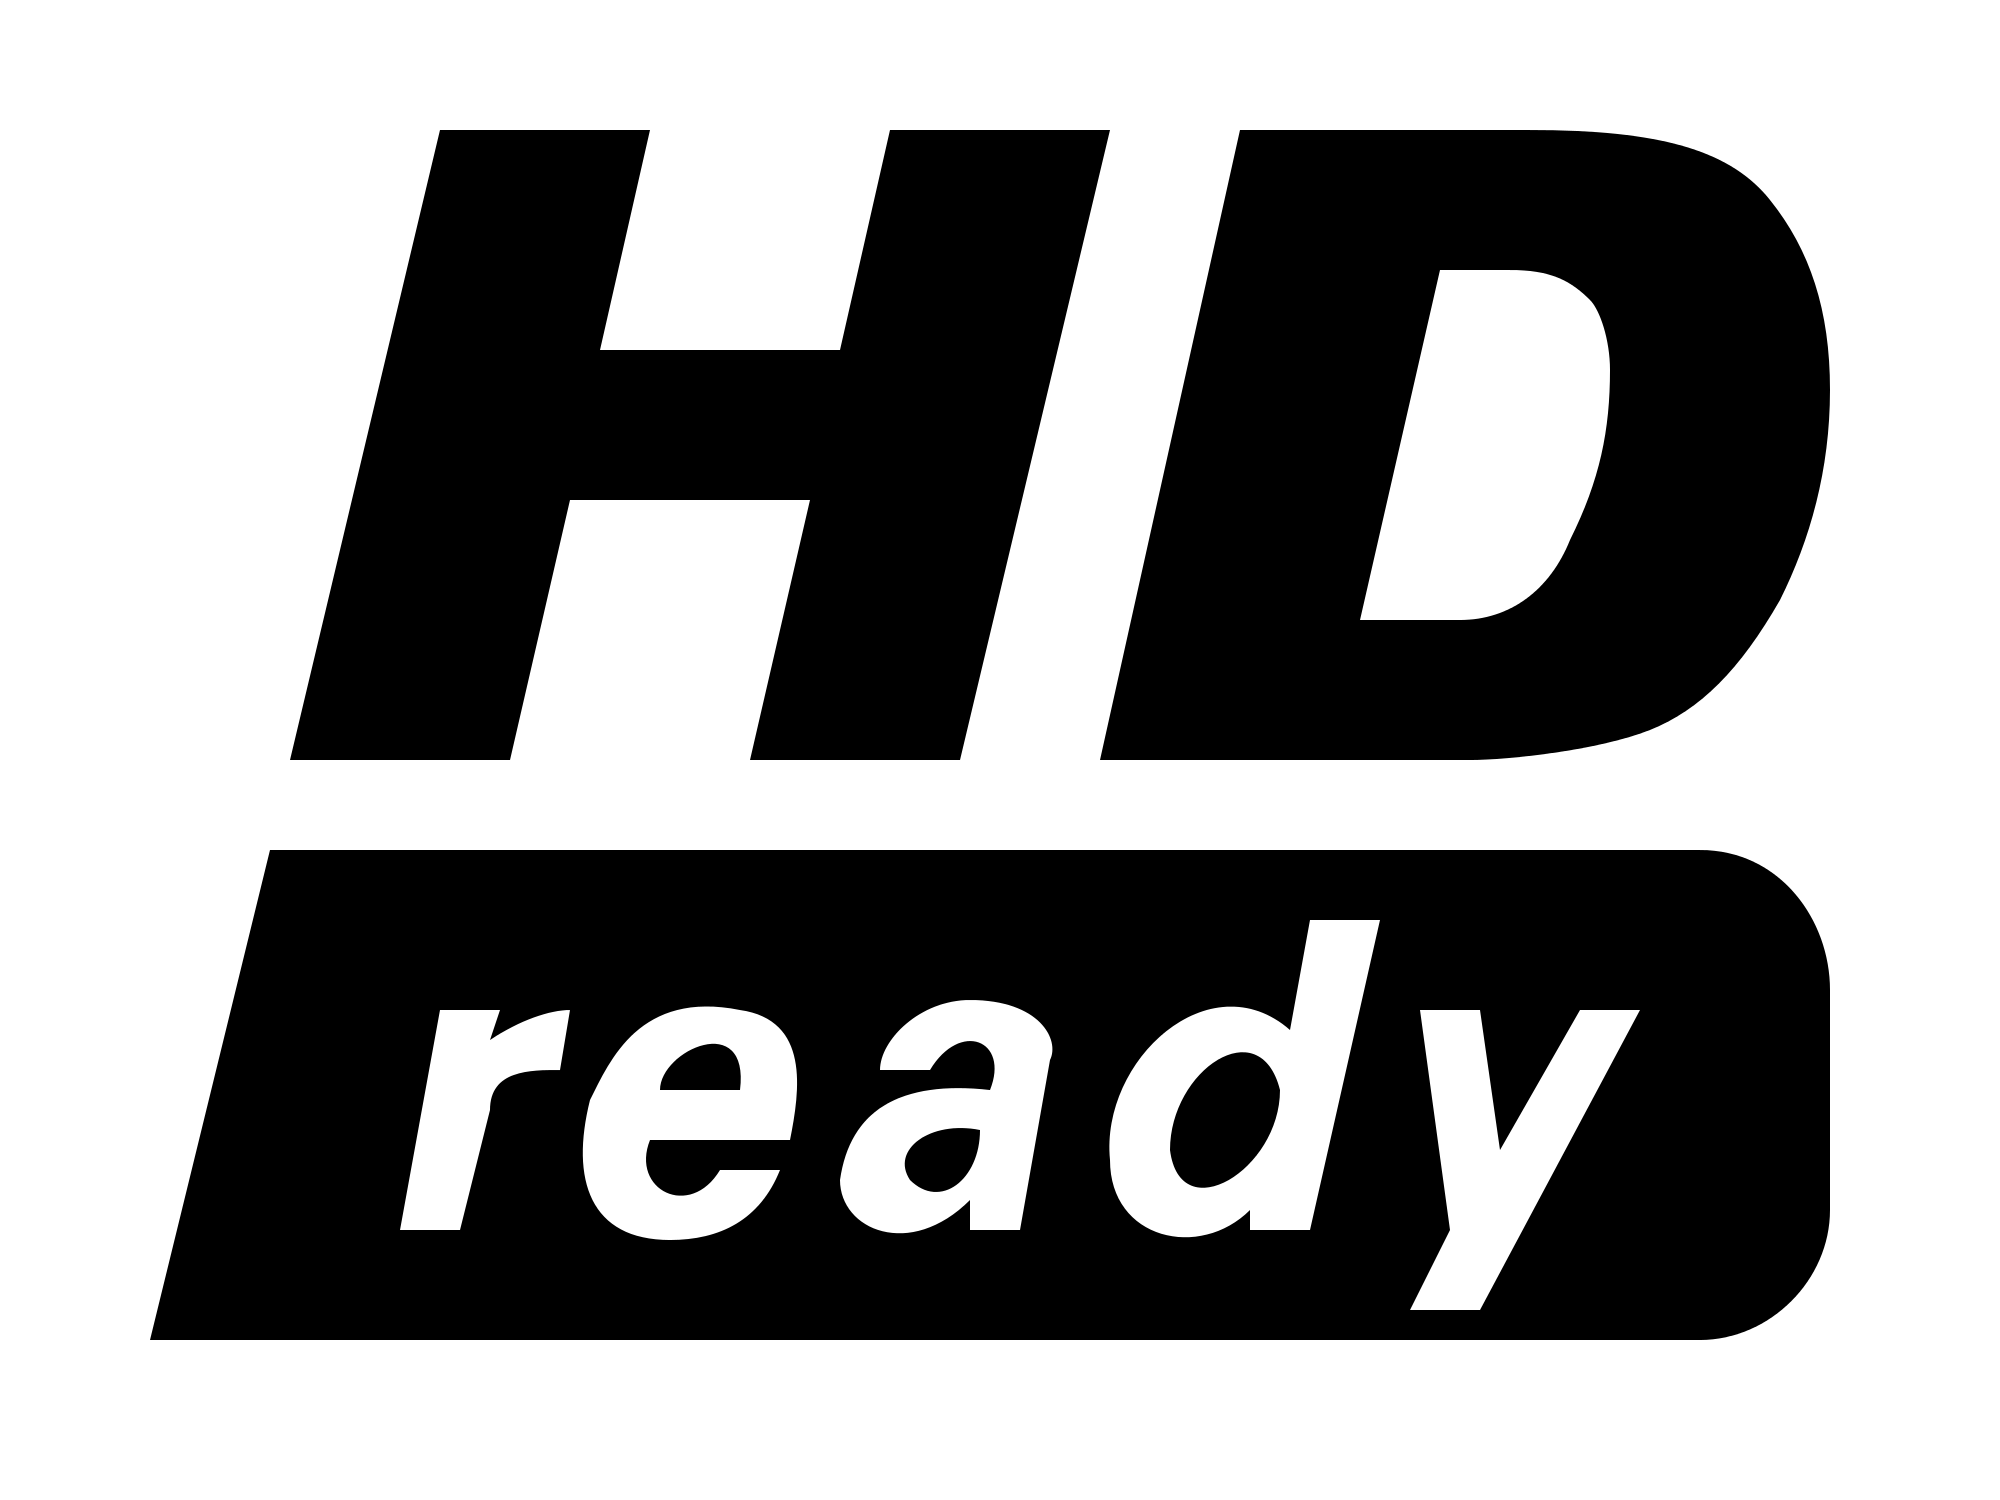 720P Logo - HD ready